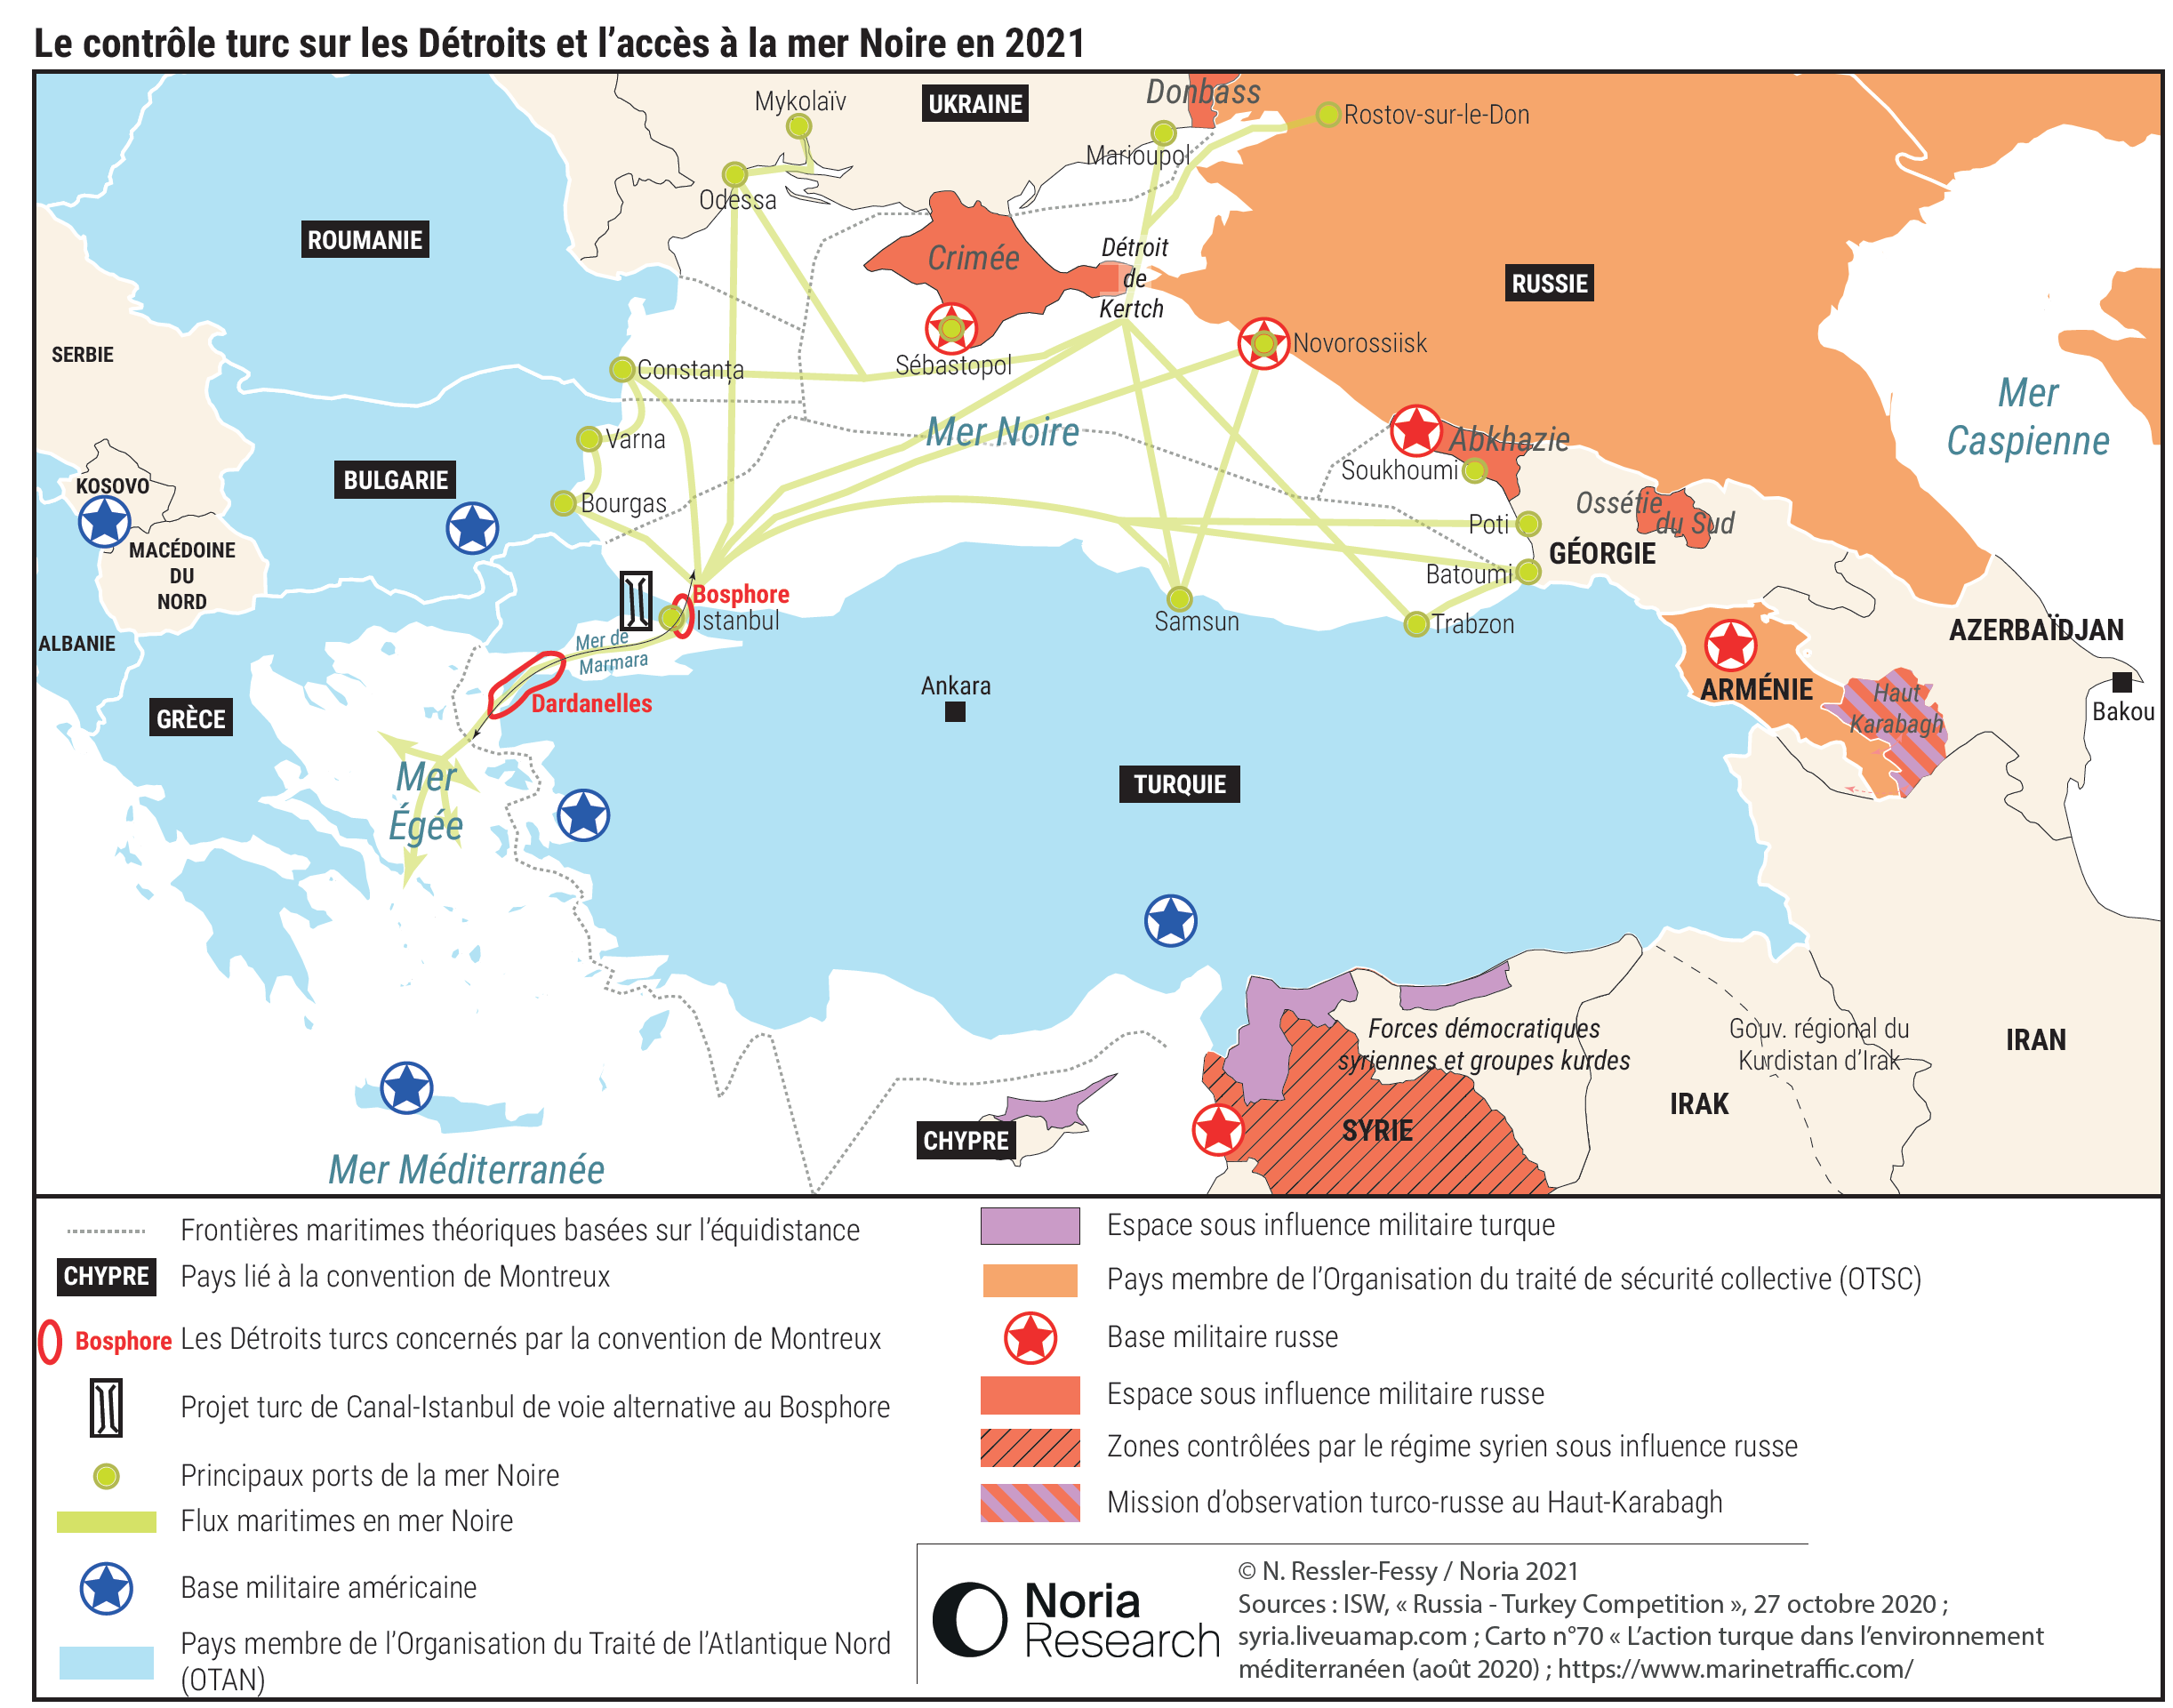 3 - Le contrôle turc sur les Détroits et l'accès à la mer Noire en 2021